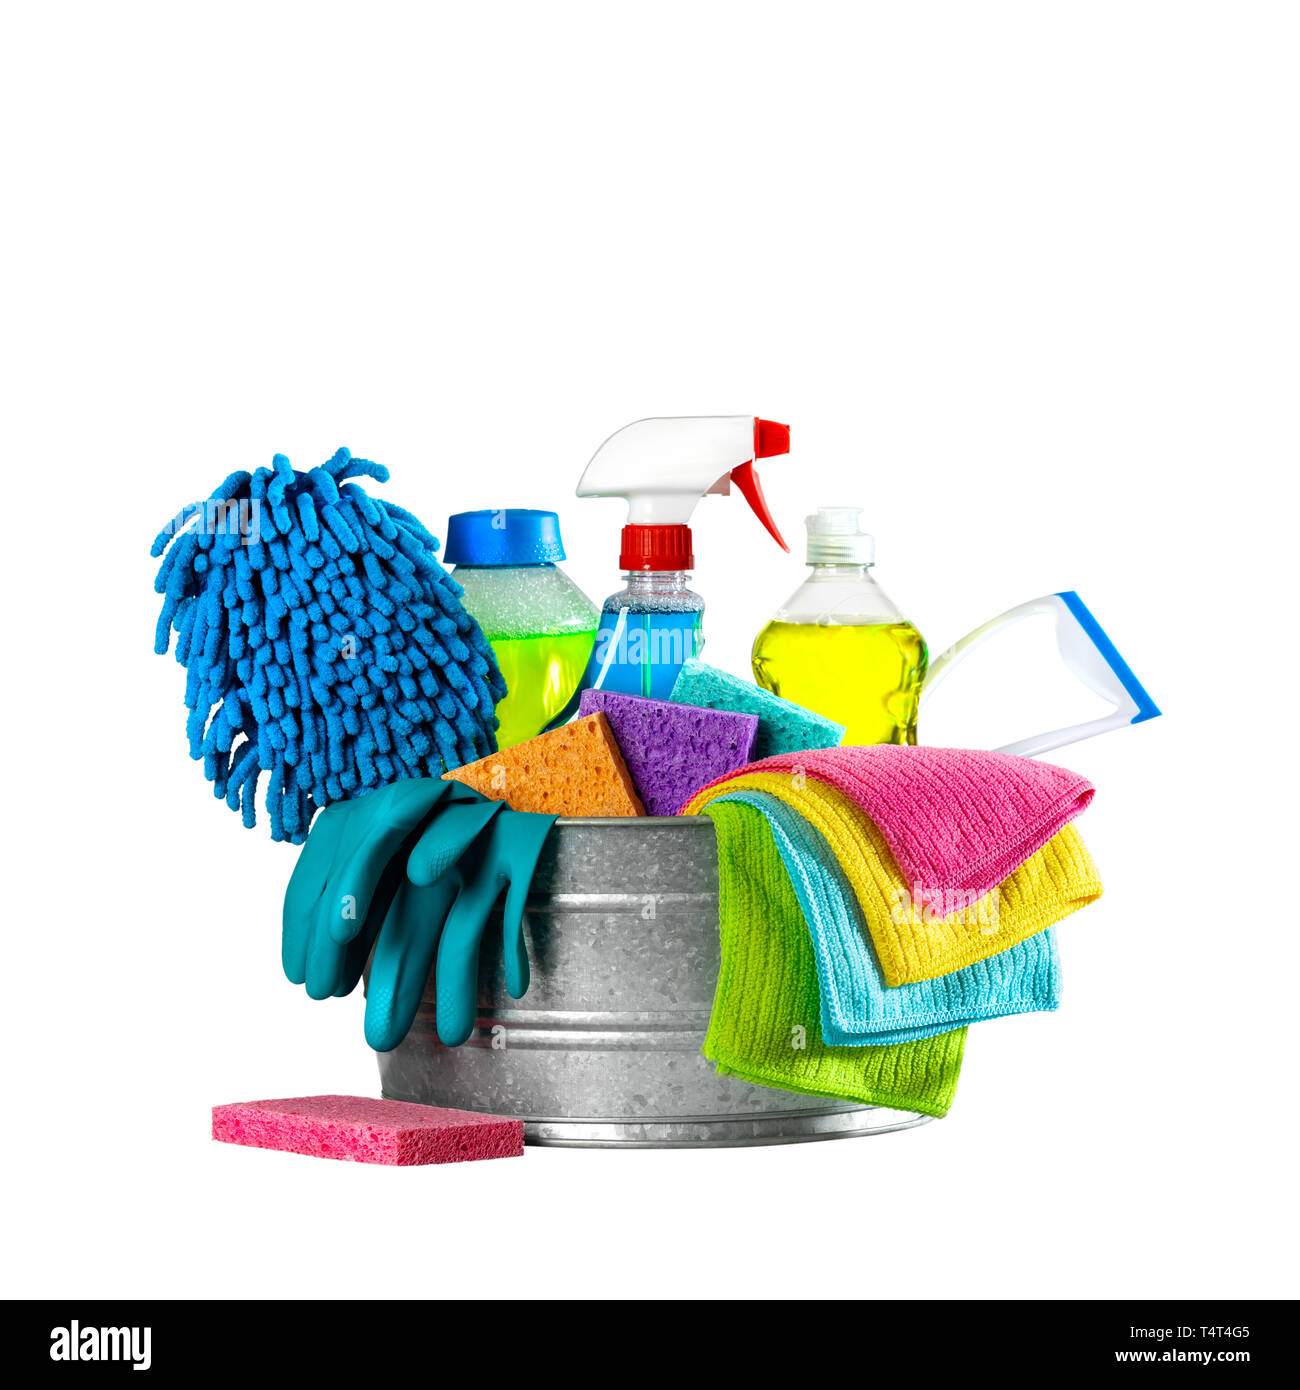 Eimer Putzmittel auf isolierten weißen Hintergrund - Reinigung Services Konzept Stockfoto